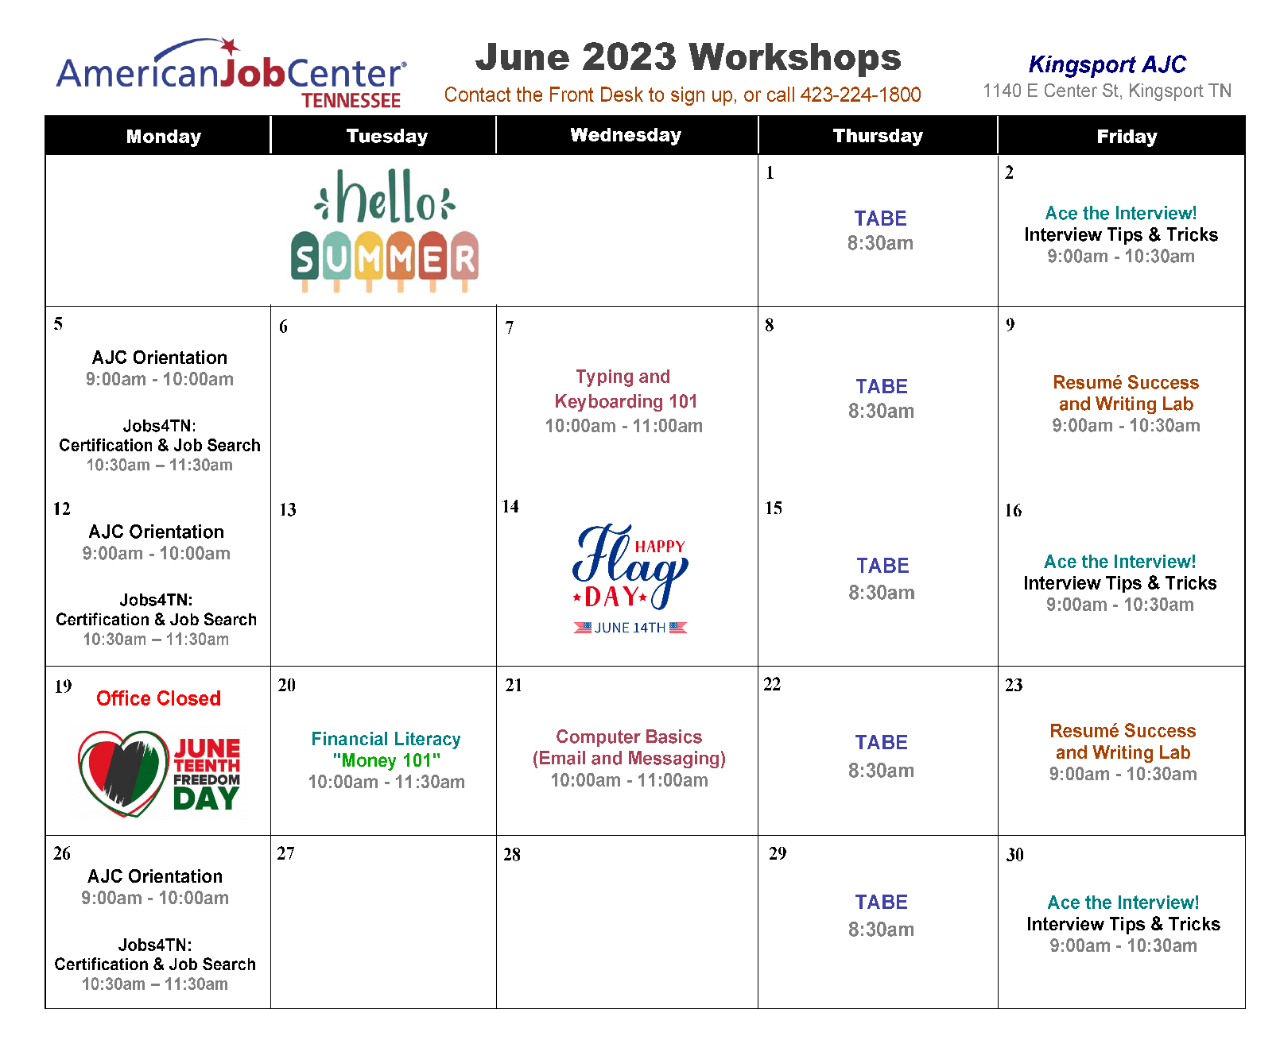 June 2023 Workshops at Kingsport AJC TN